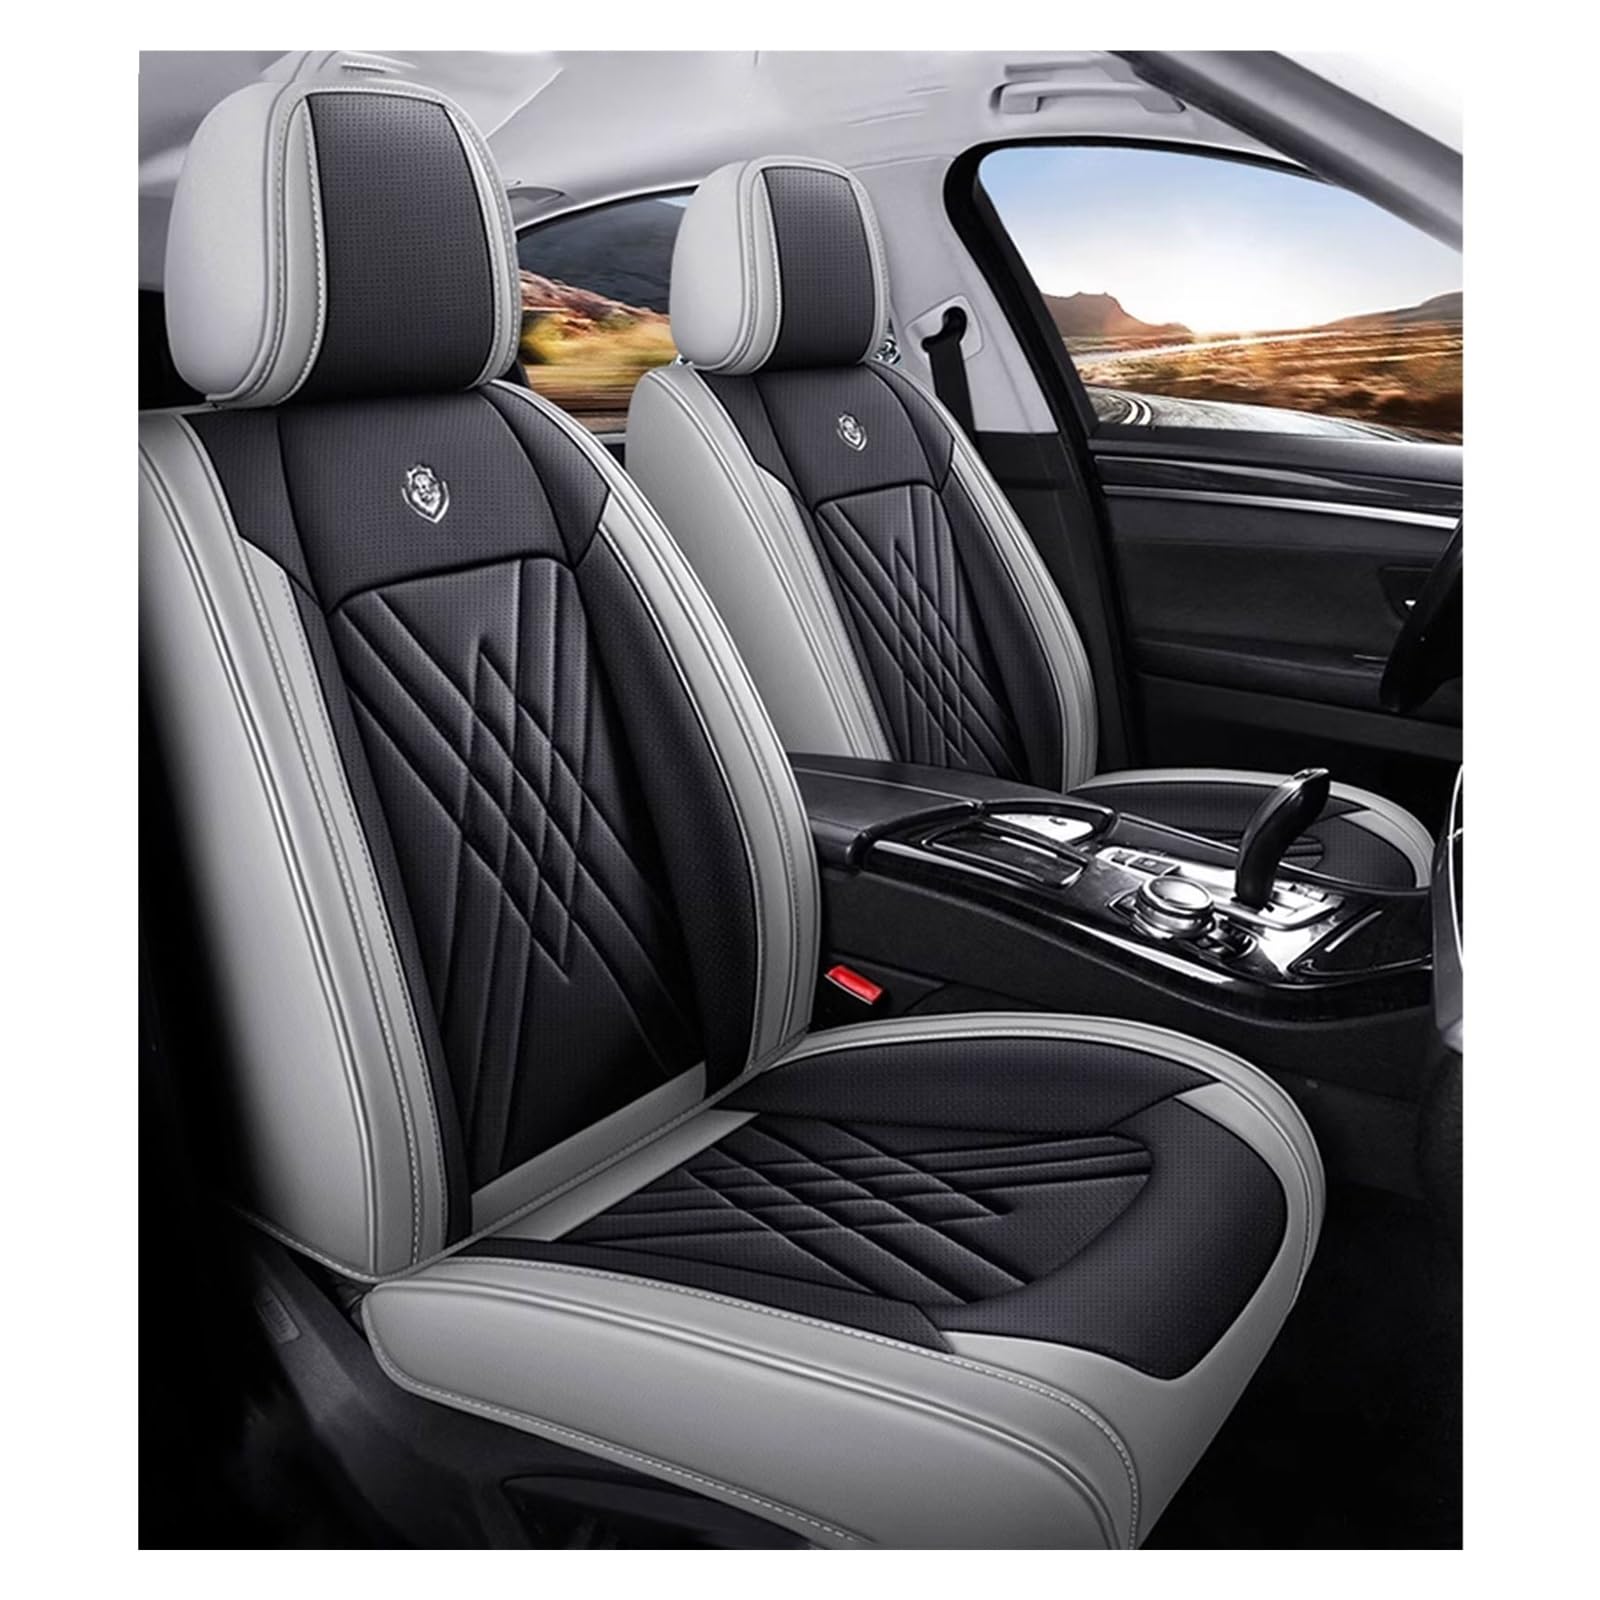 WEBOL Universal-Sitzbezug Komplett-Set Für Ford Fiesta 2009-2016, AutositzbezüGe Set Leder, 5-Sitze Universal-SitzbezüGe Auto Komplettset(B) von WEBOL